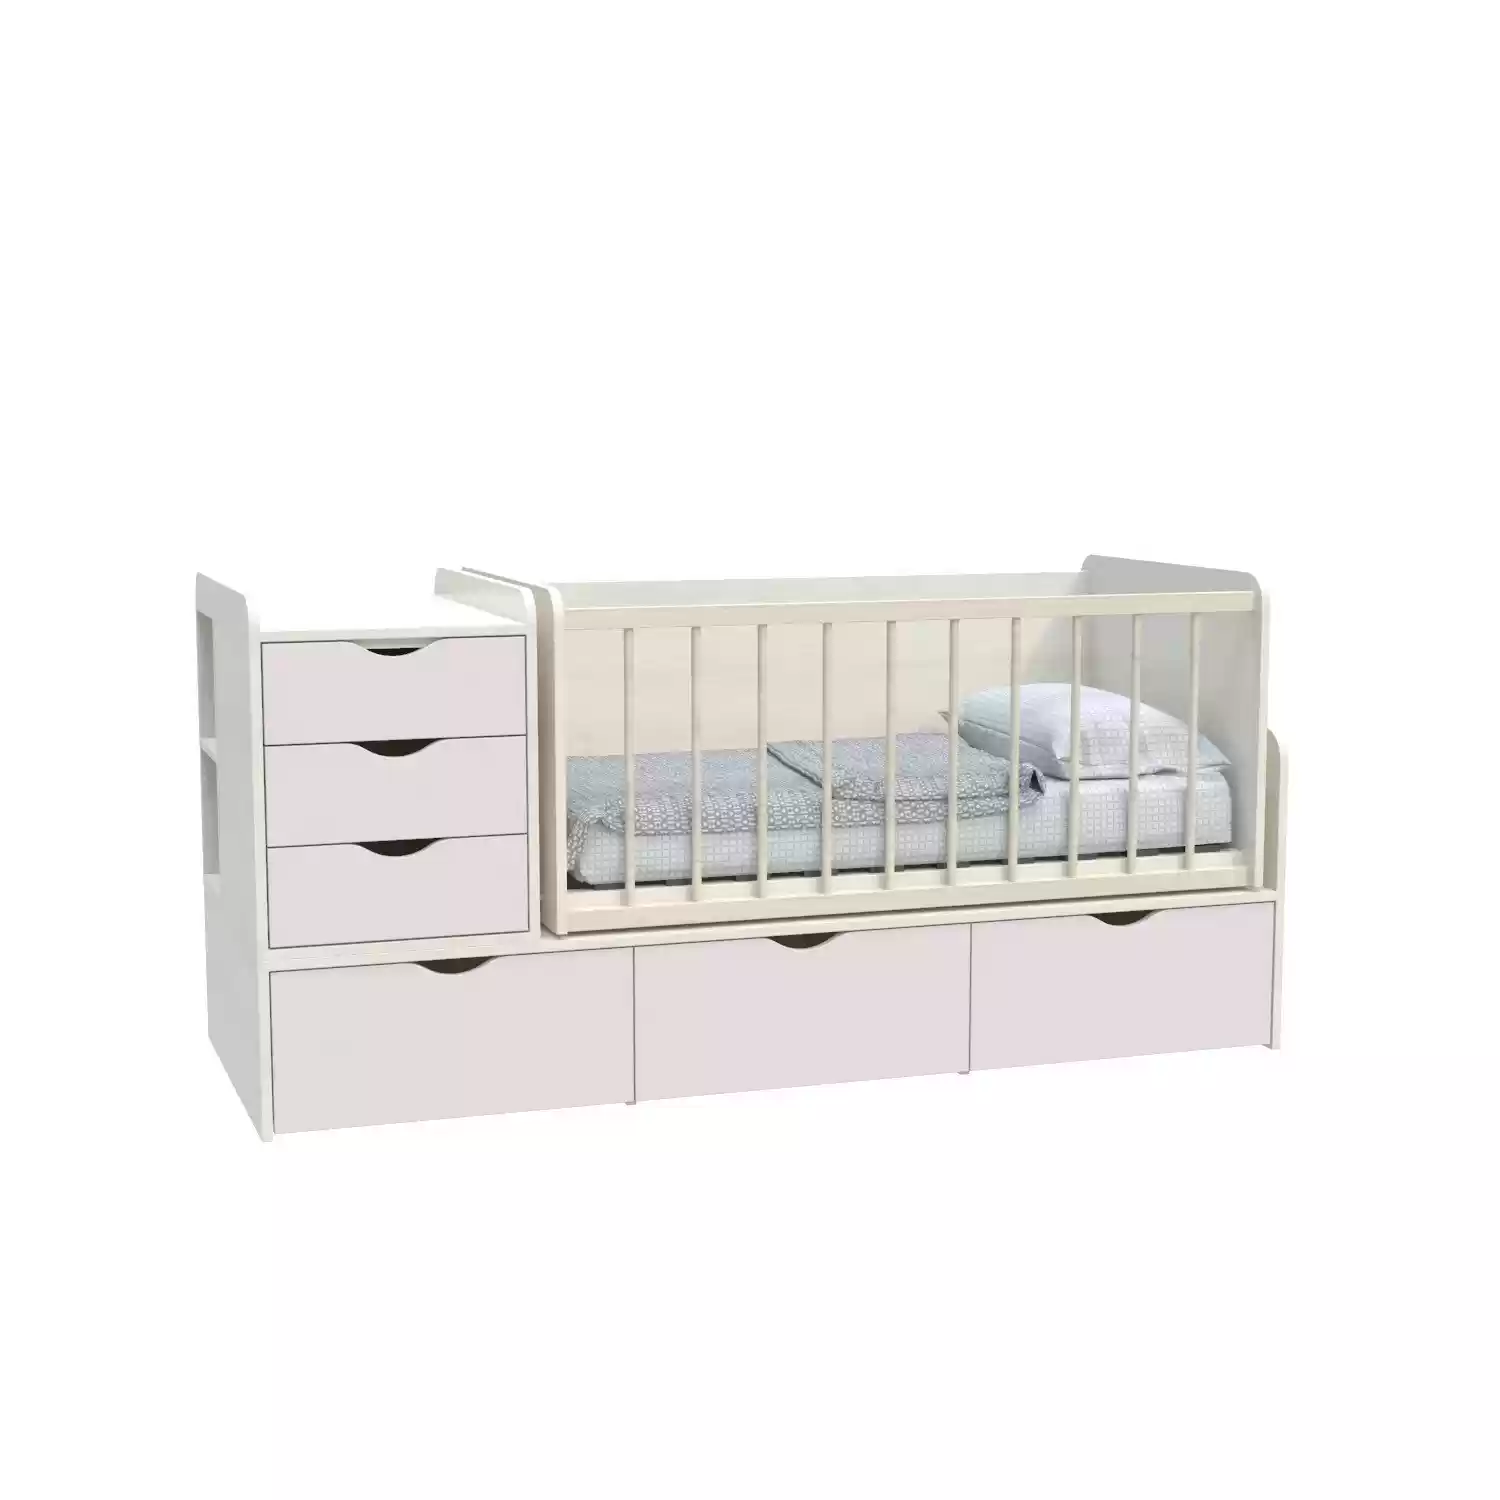 Дитяче ліжко Binky DS504А (3 в 1) дуб шамоні/сакура (ДСП)